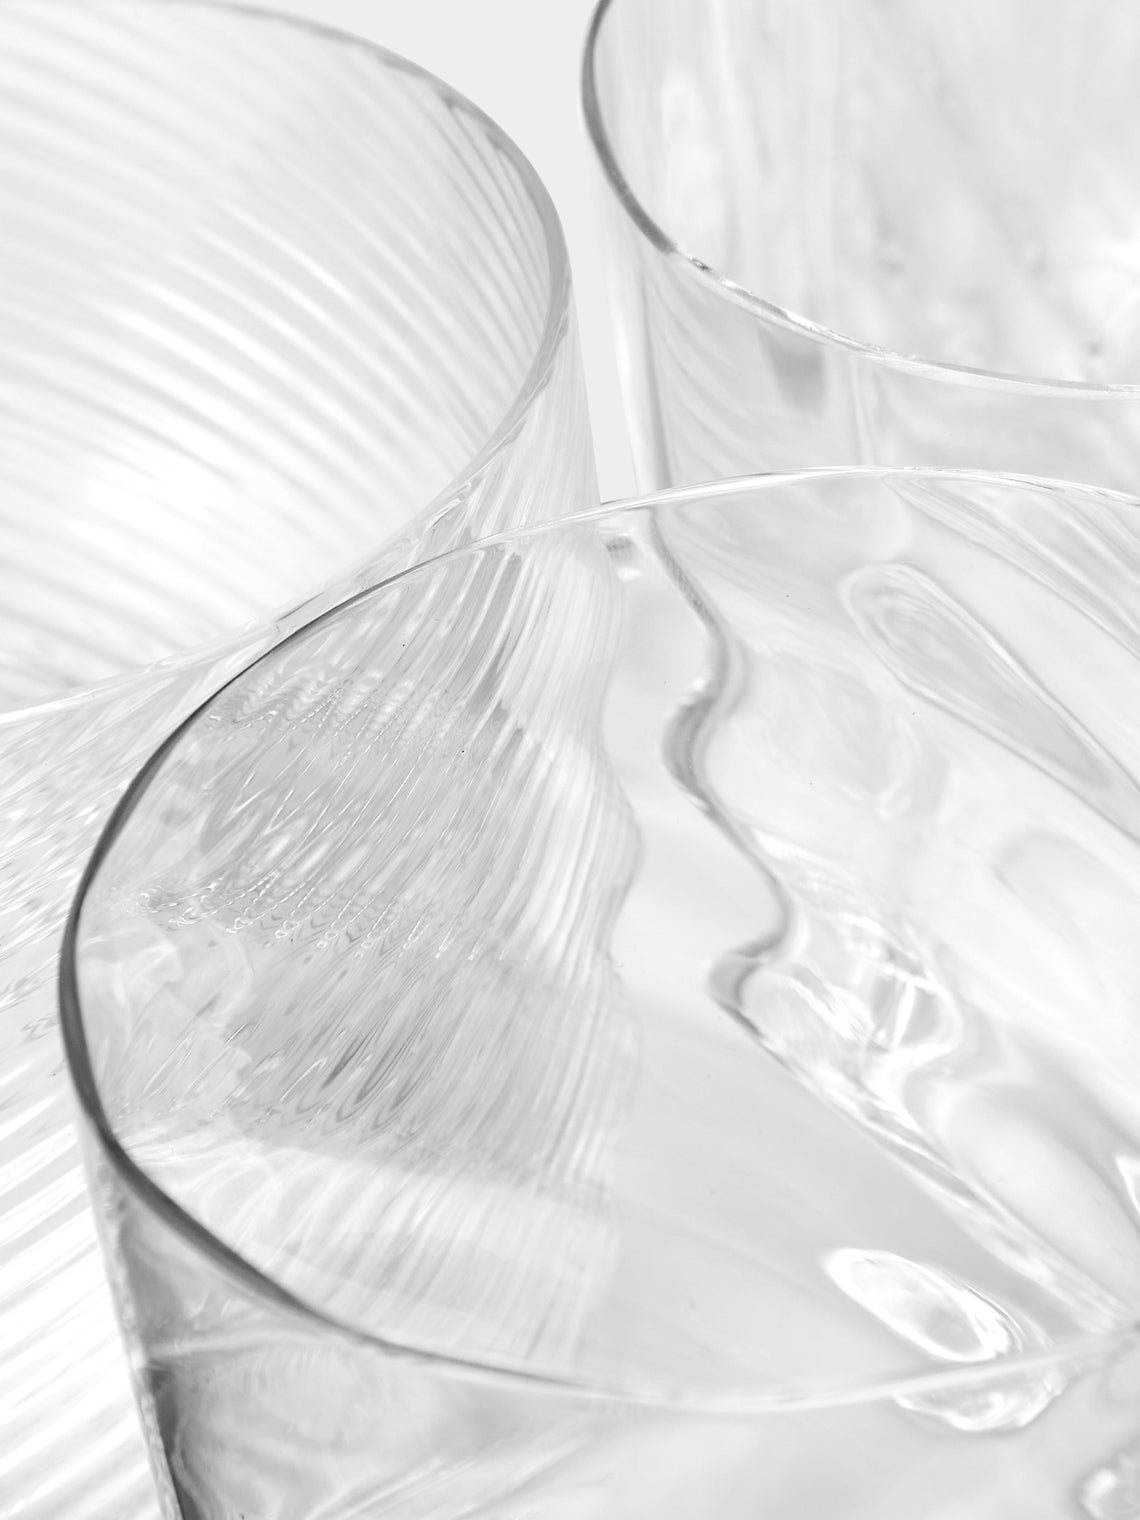 NasonMoretti - Tolomeo Hand-Blown Murano Glass Tumblers (Set of 6) -  - ABASK